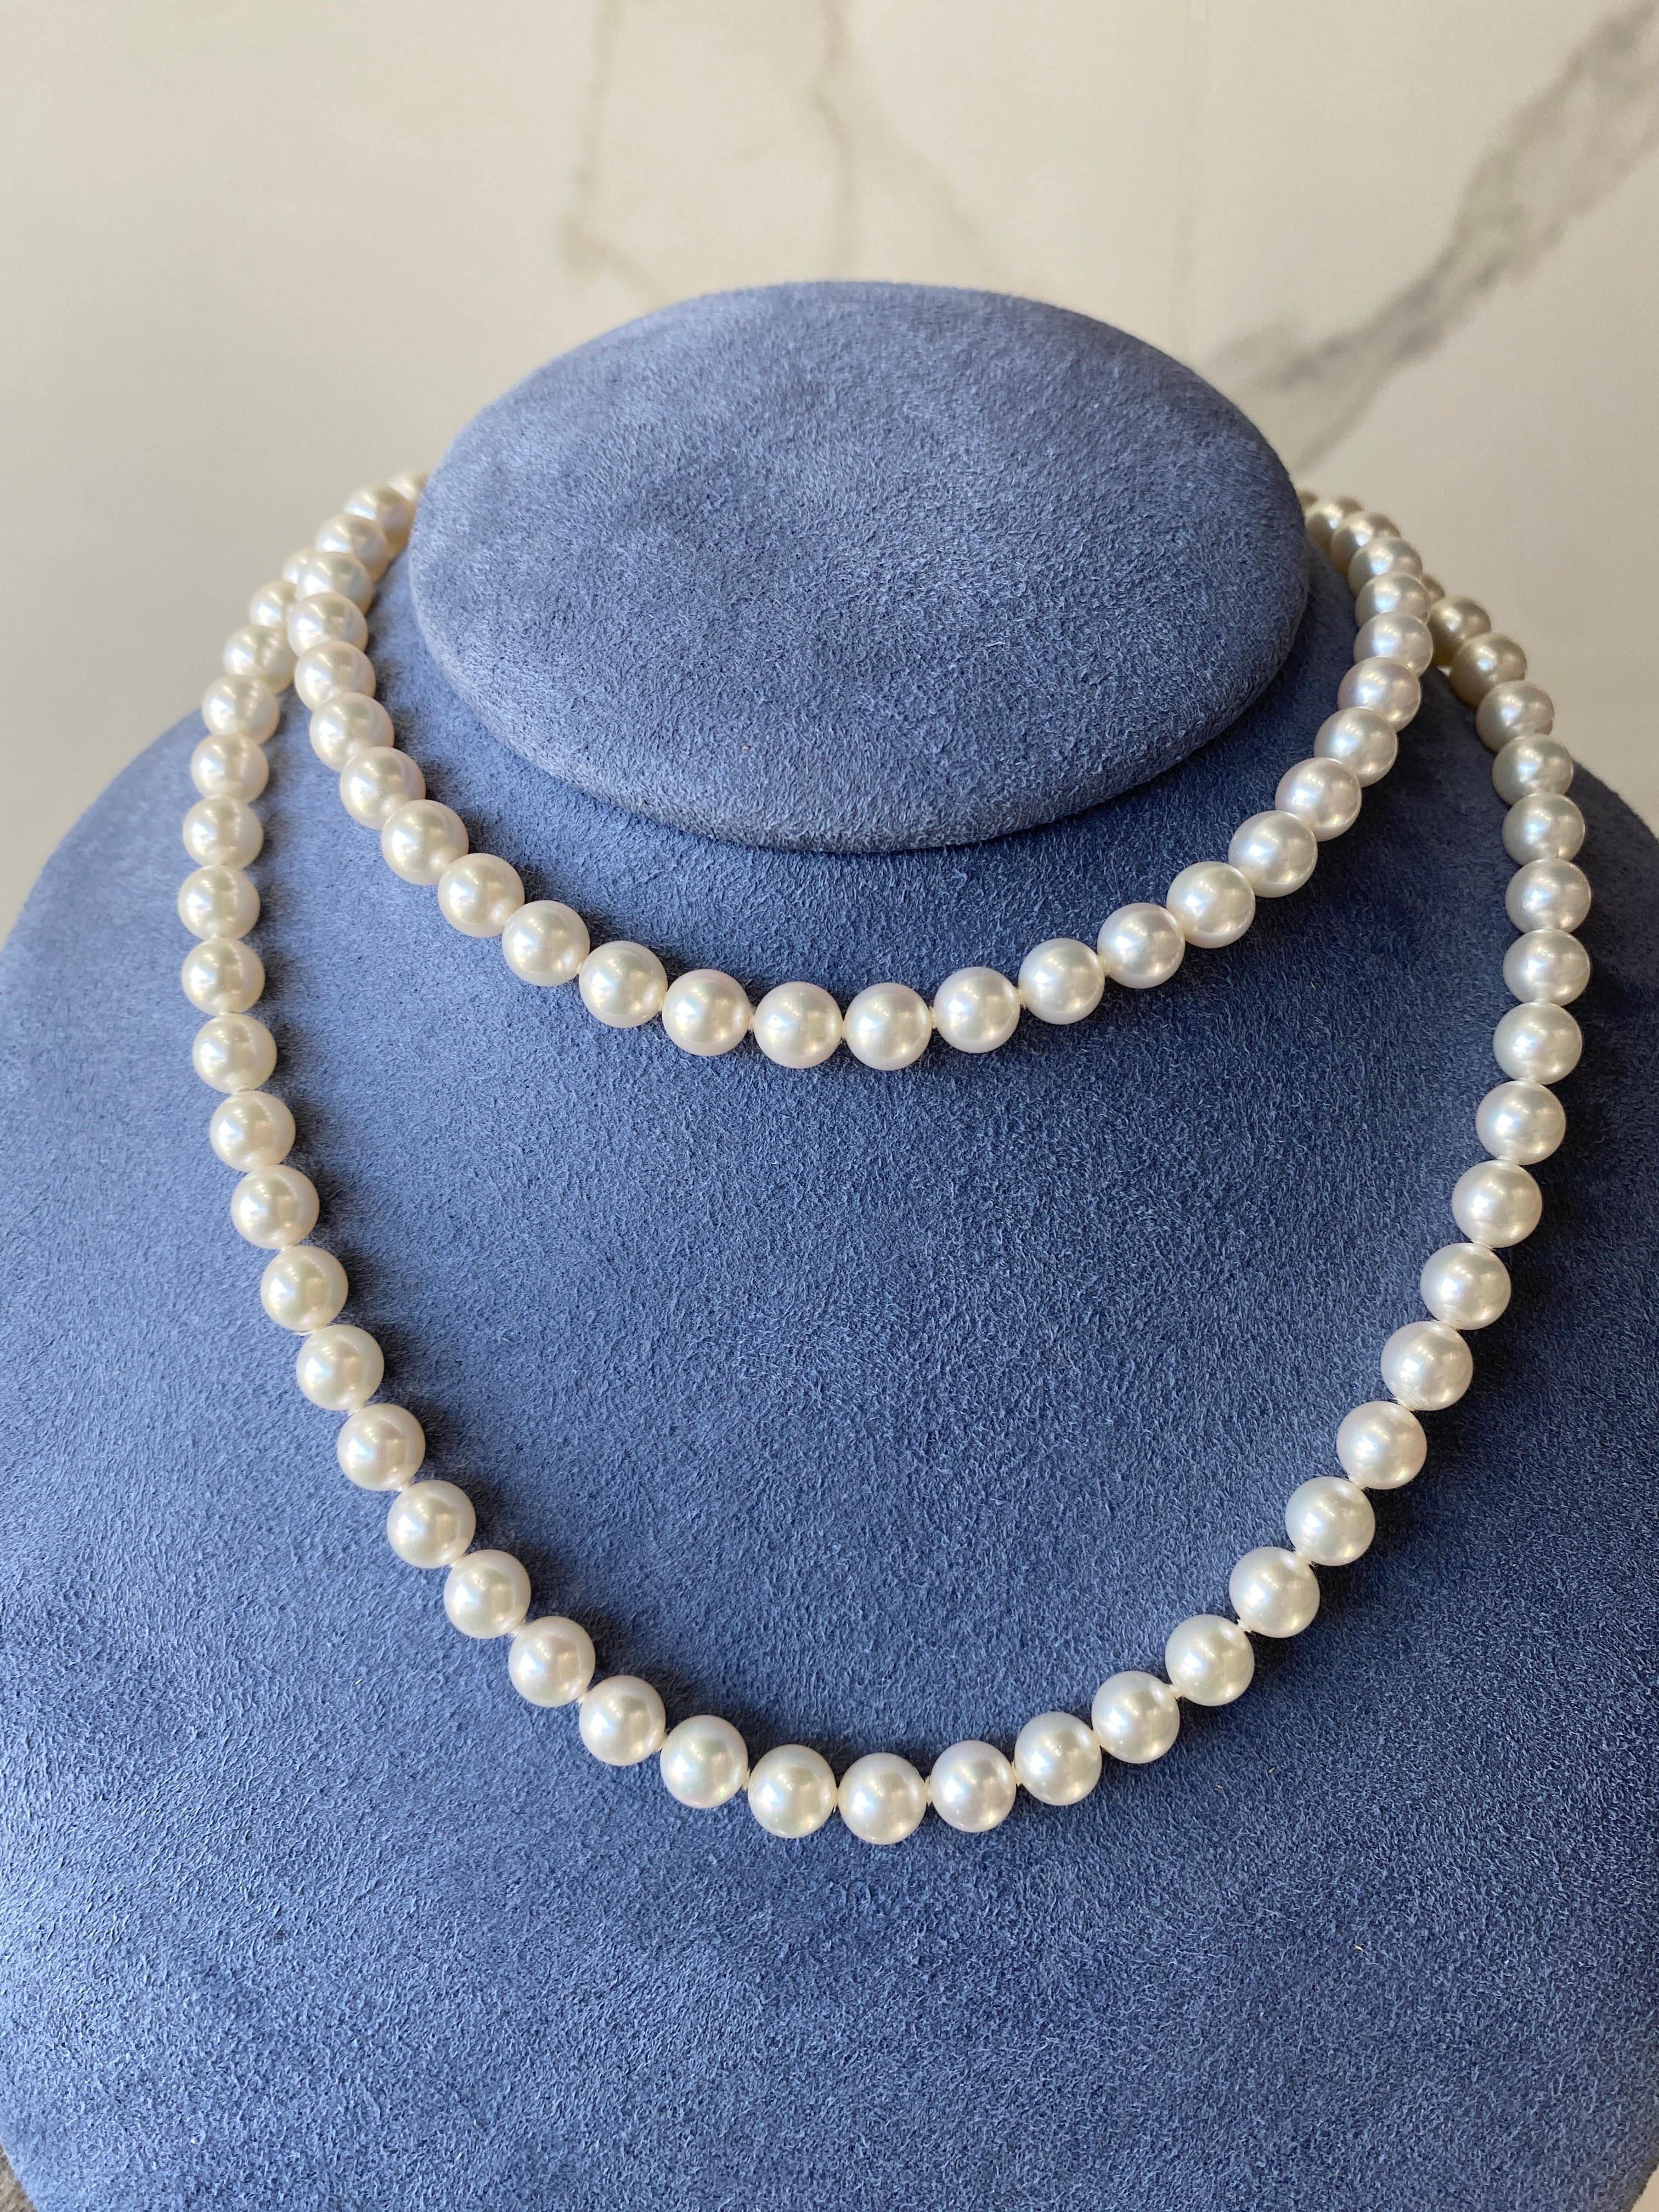 Ce magnifique collier de Mikimoto est composé d'une trentaine de perles d'Akoya superbes et lustrées. Fermoir en or jaune 18 carats en forme de crochet. Il est marqué 750 avec le logo Mikimoto sur le fermoir. 
Dimensions : Les perles mesurent